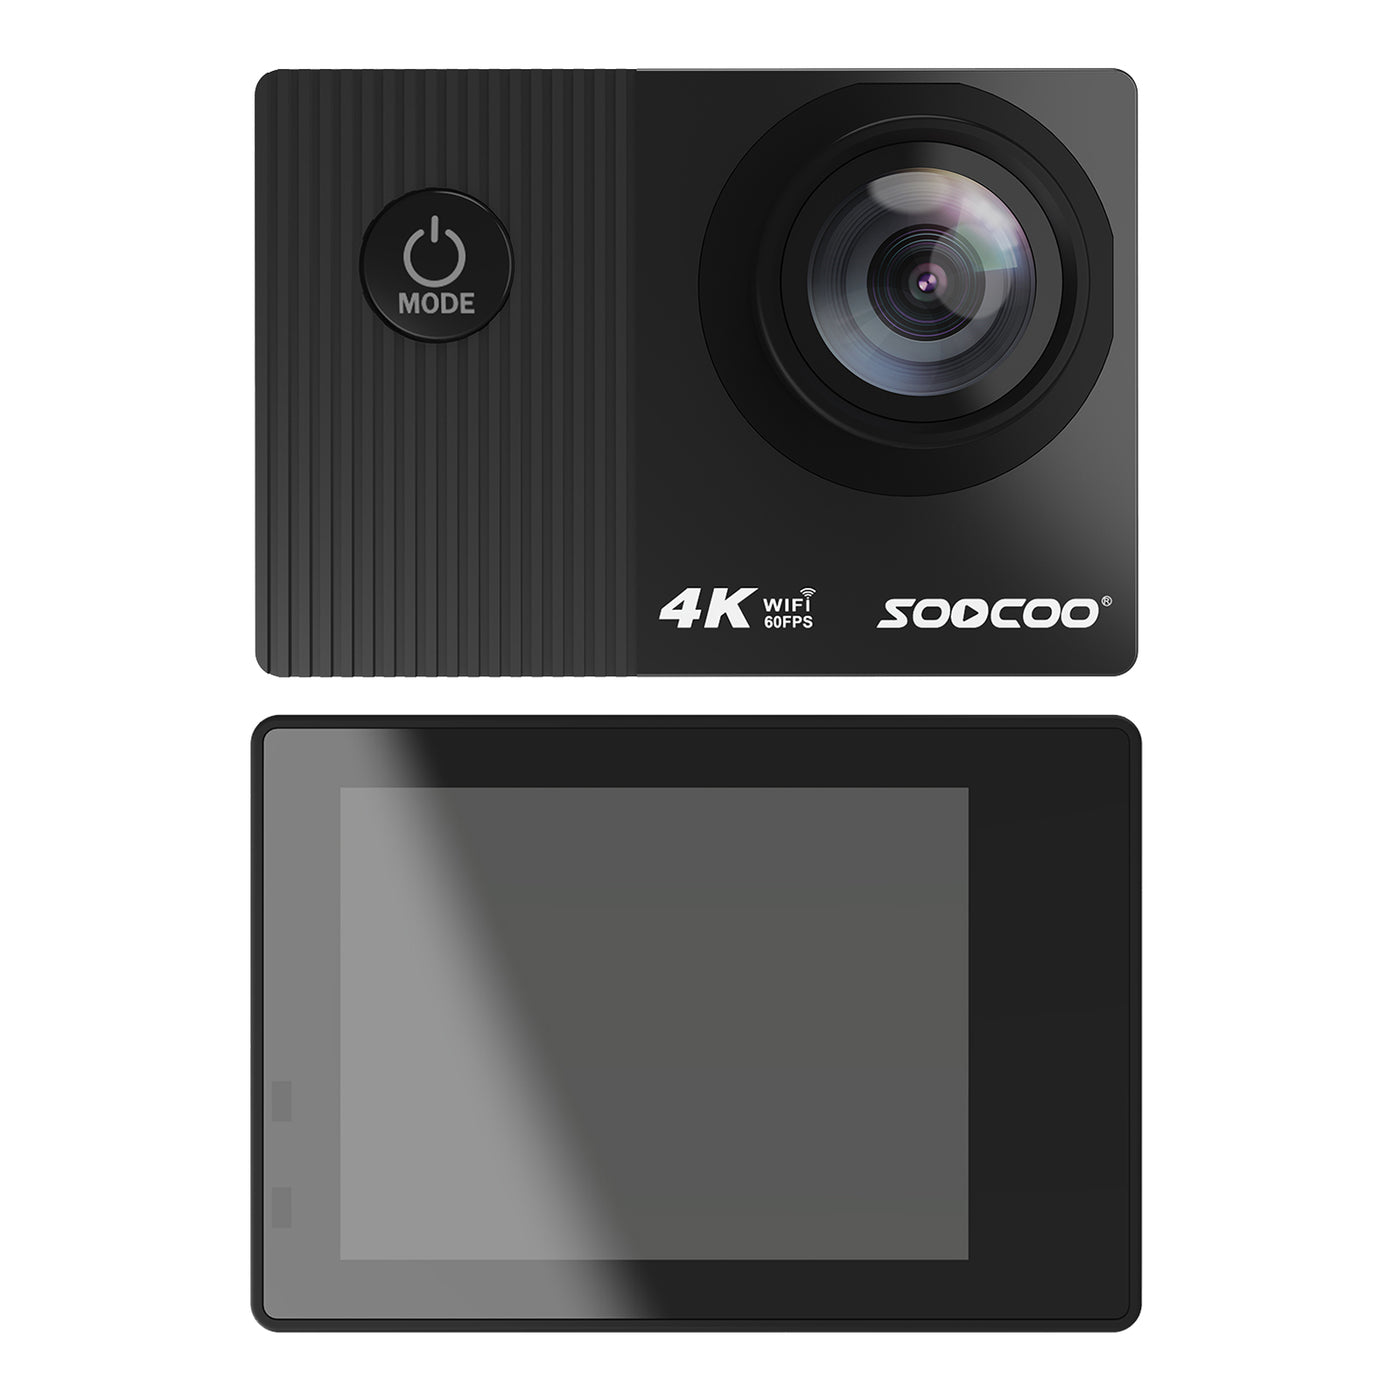 Sports Action Camera 4K 60FPS WIFI HD 1080P Waterproof Digital Camcorder